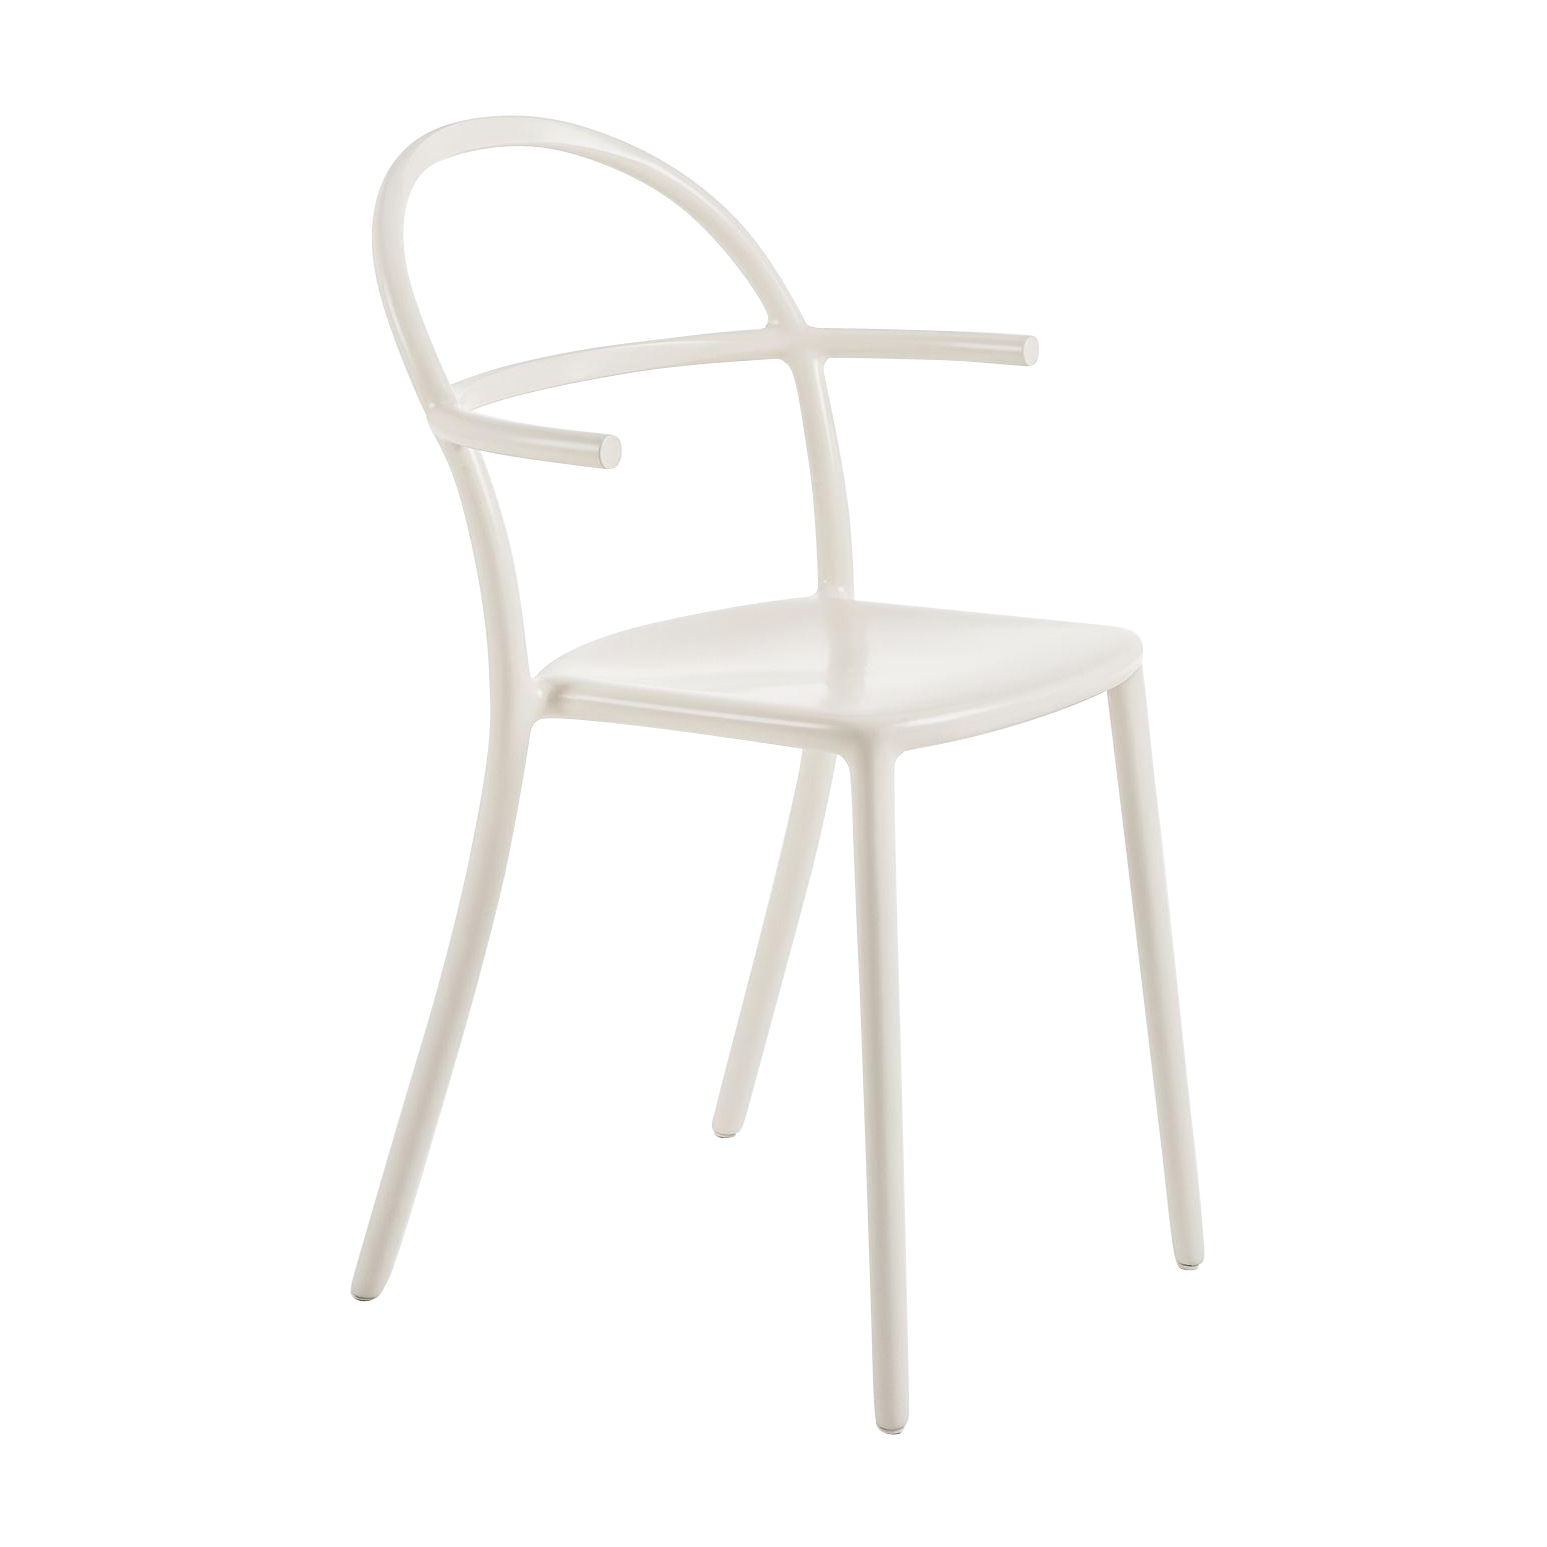 kartell - chaise de jardin avec accoudoirs generic c - blanc/polyéthylène coloré/pxpxh 52x51x83,5cm/empilable